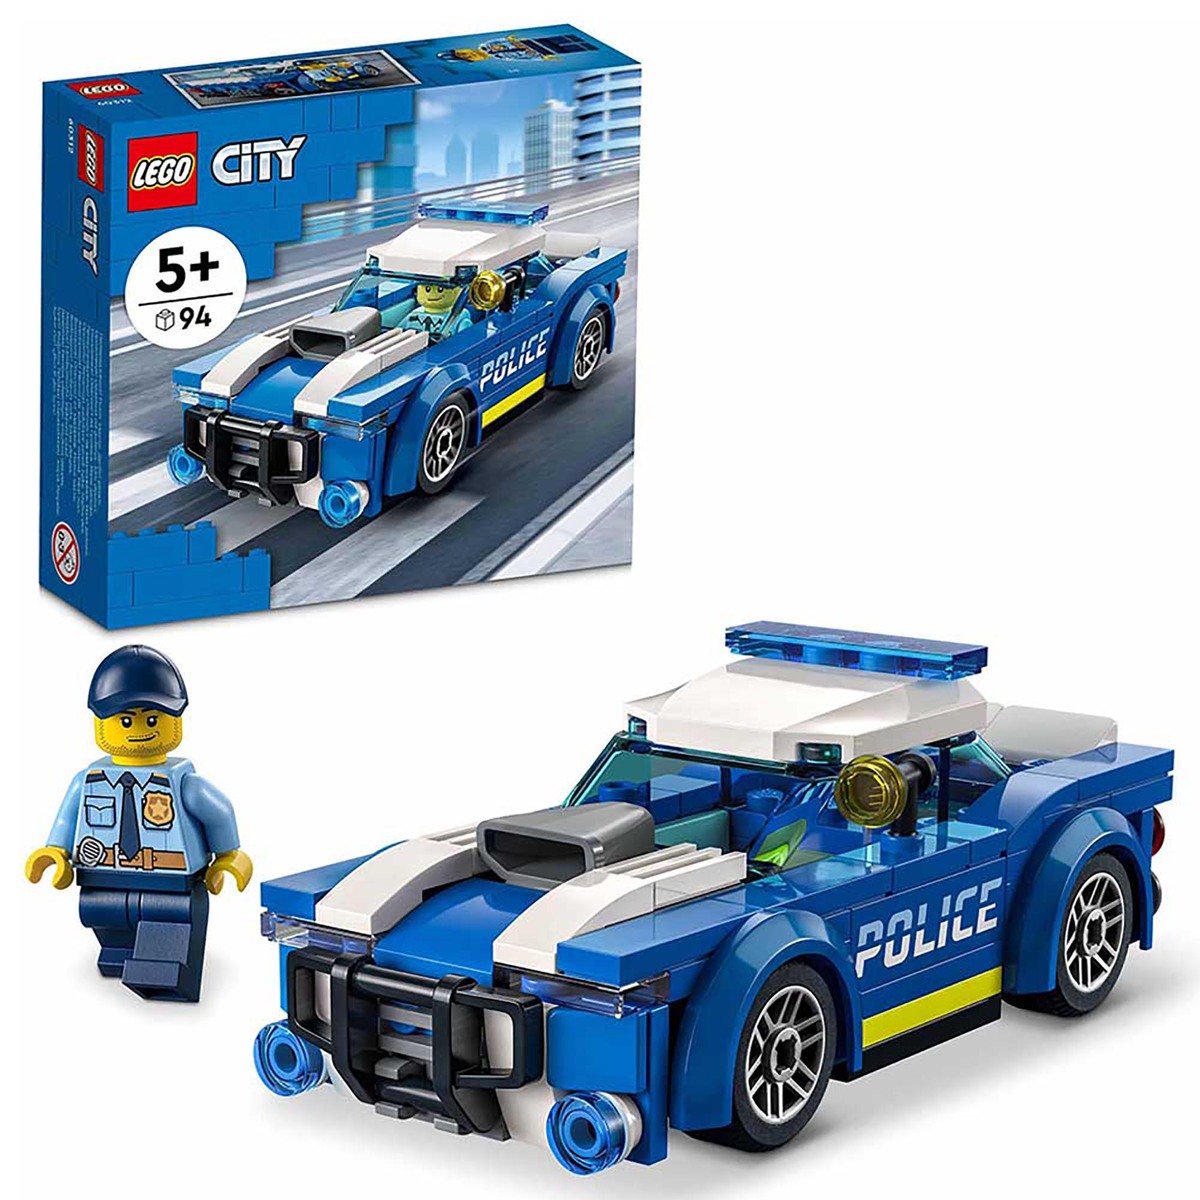 ليغو 60312 مجموعة مبنى سيارات شرطة المدينة 94 قطعة